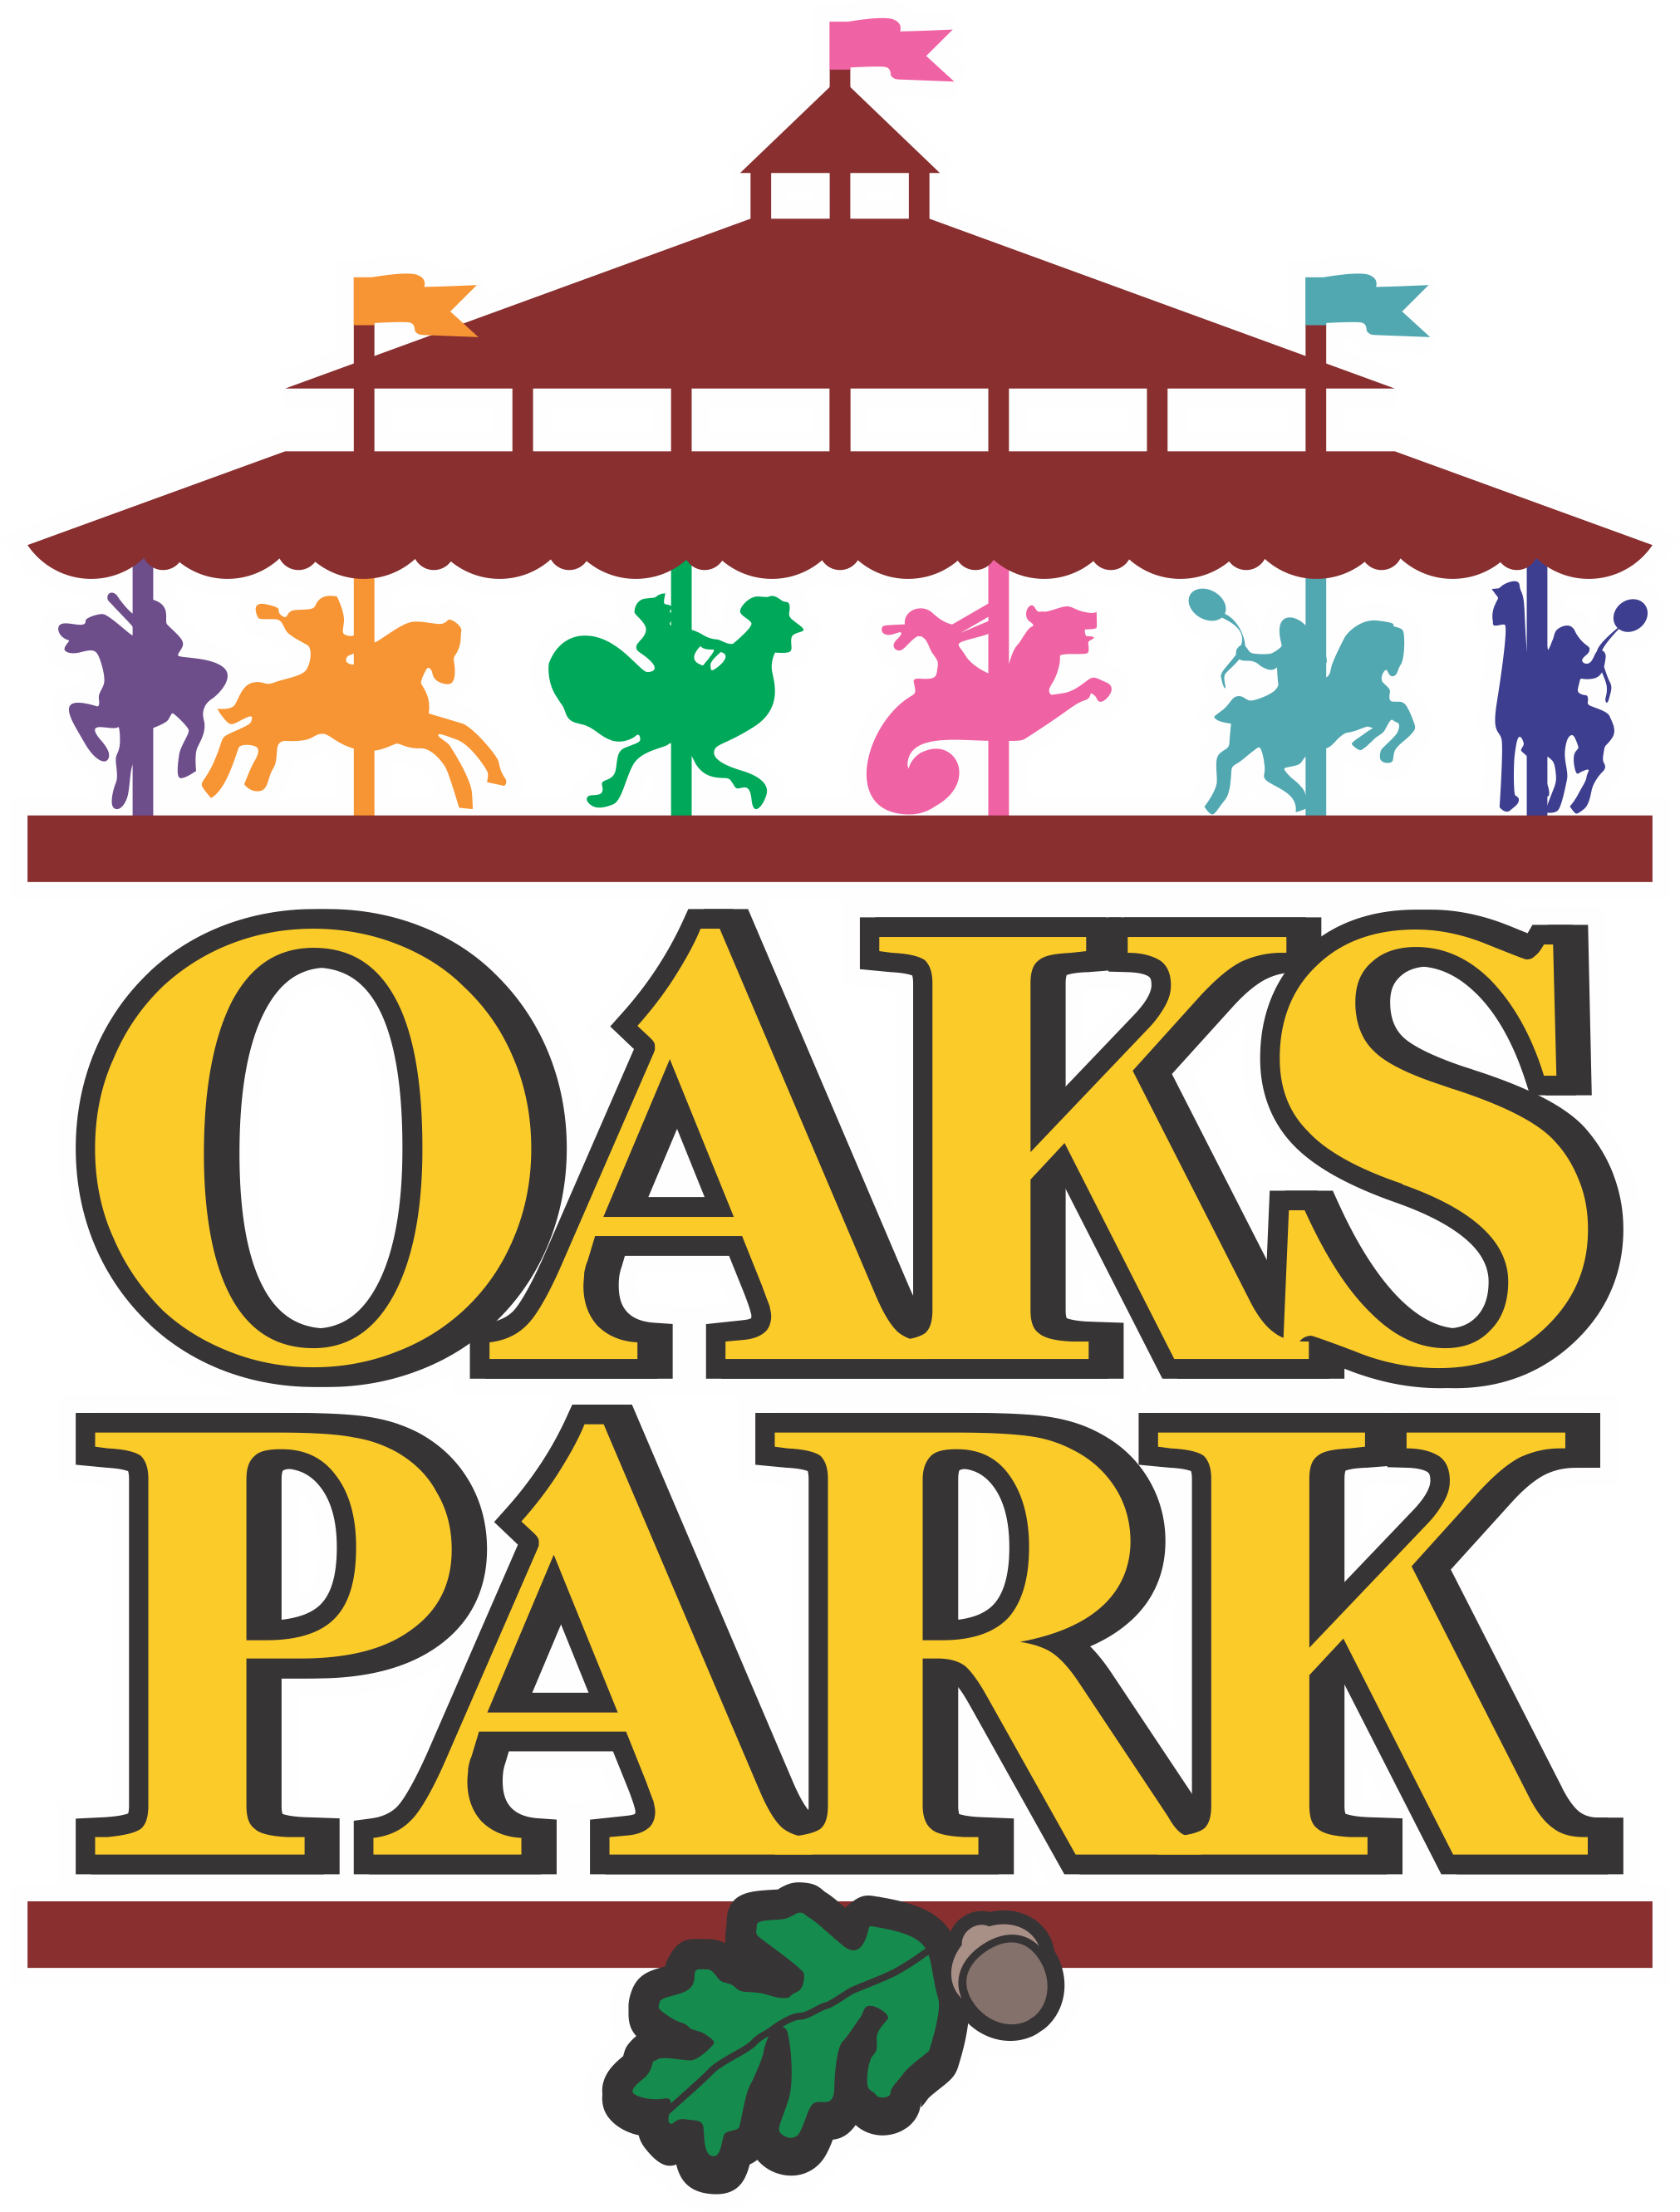 The Oaks Park Association Citizen Portal